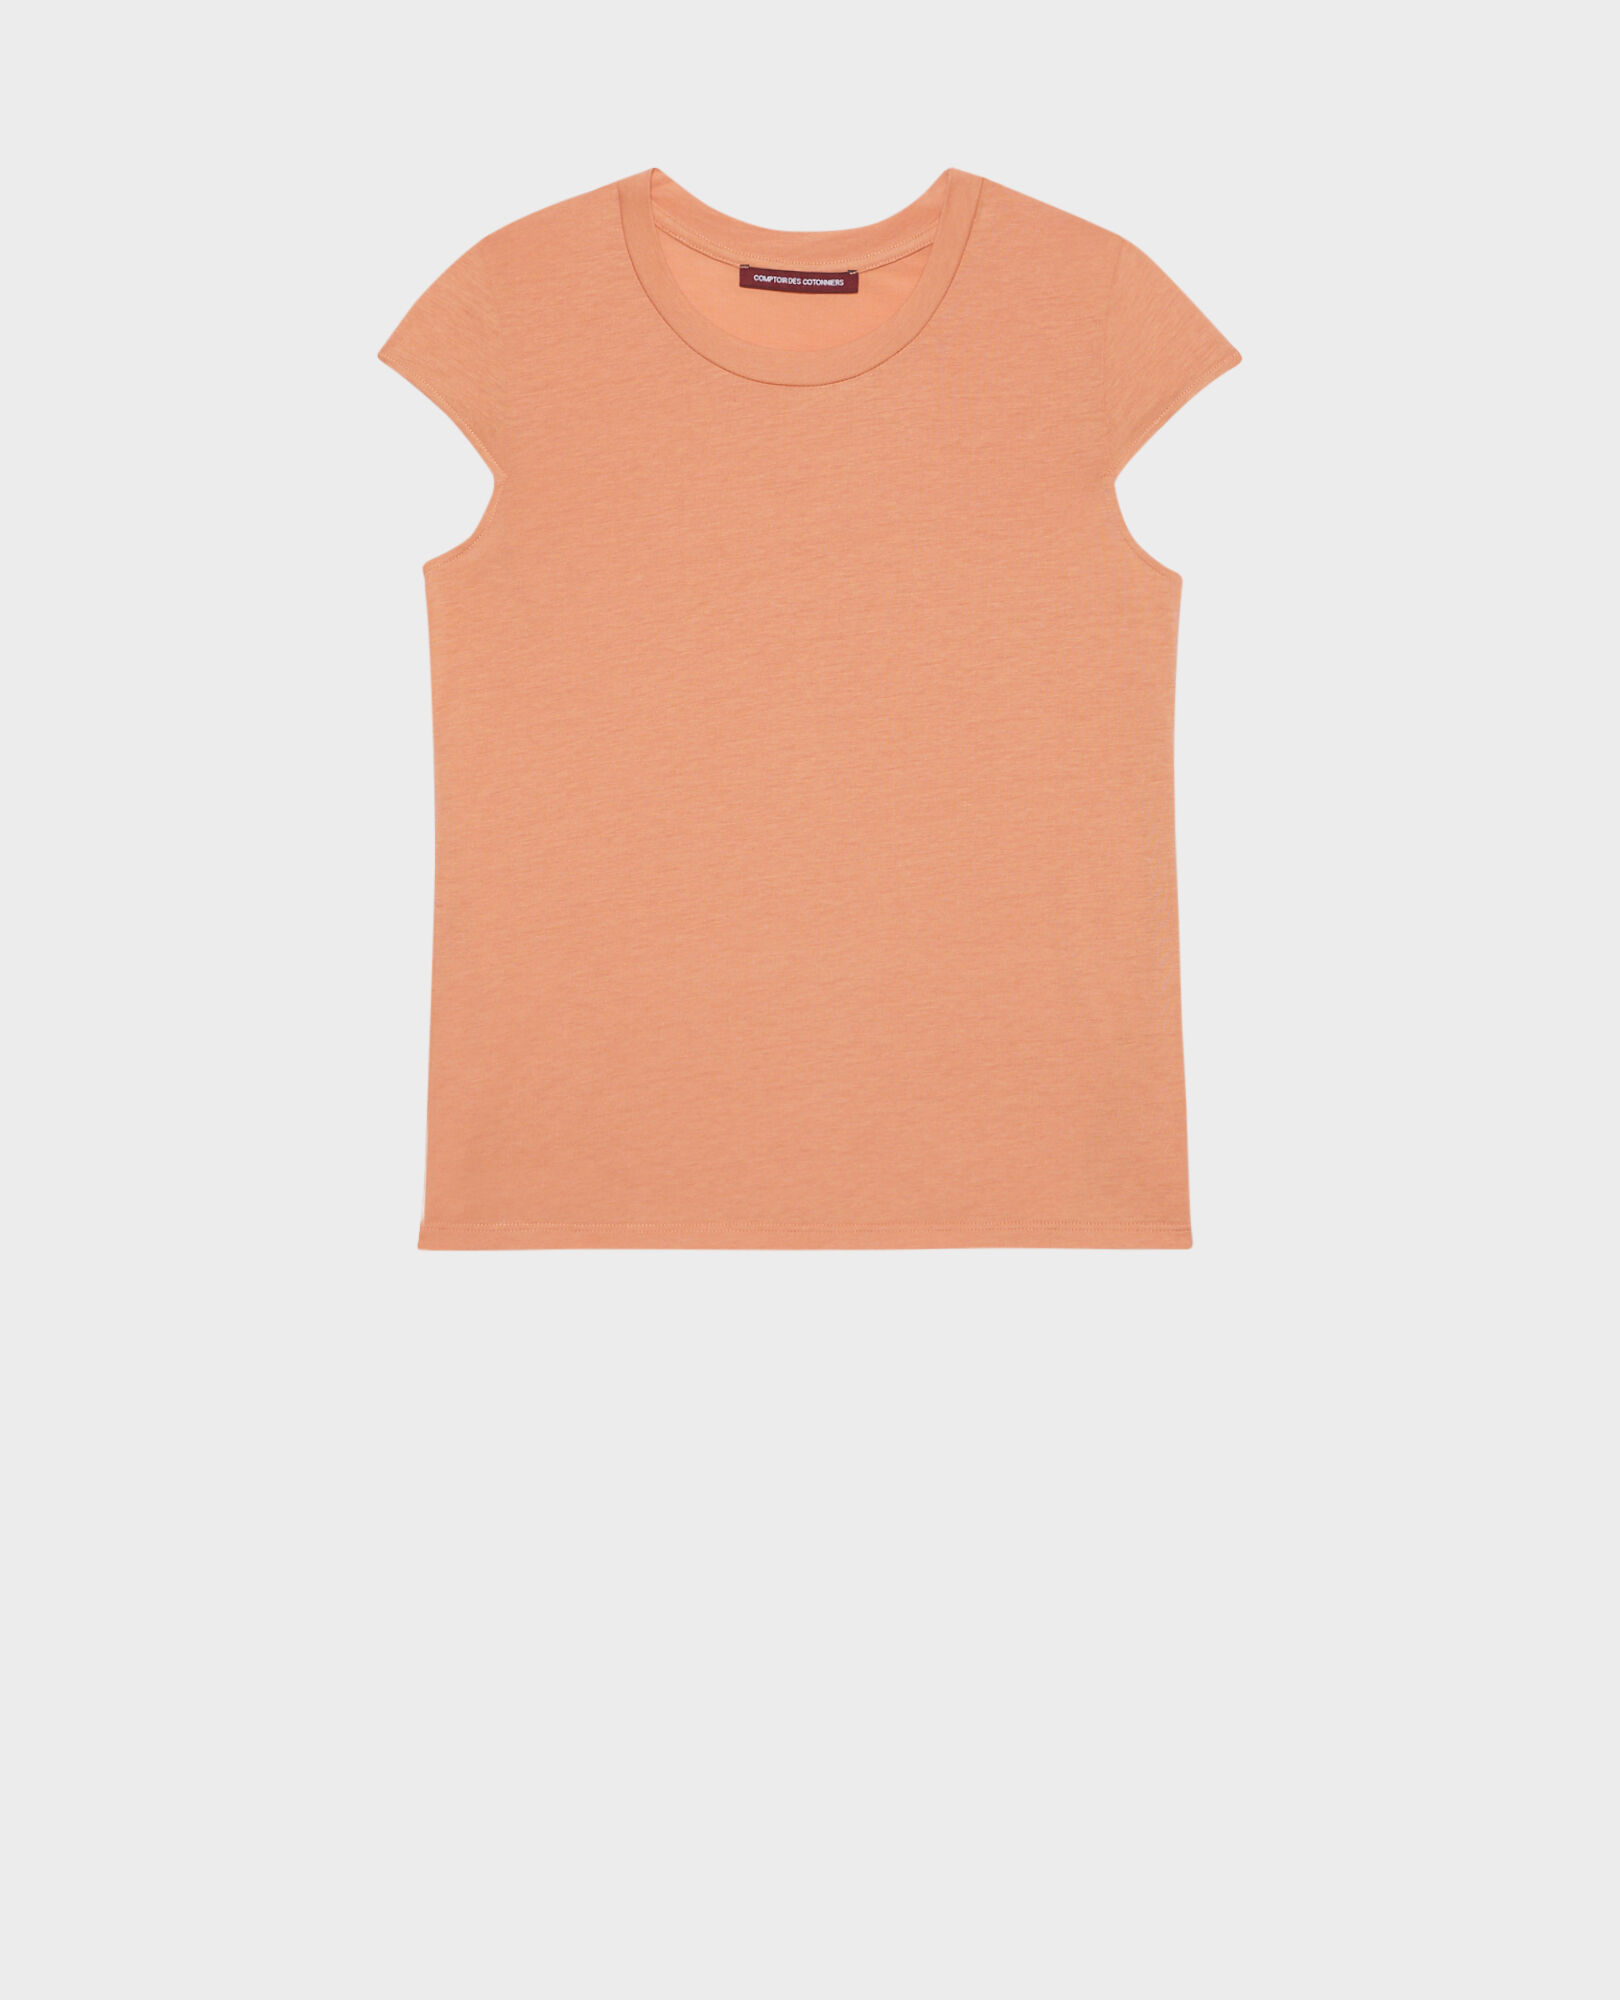 MANON – T-Shirt mit Rundhalsausschnitt aus gemischter Baumwolle 37 brown 2ste068c14